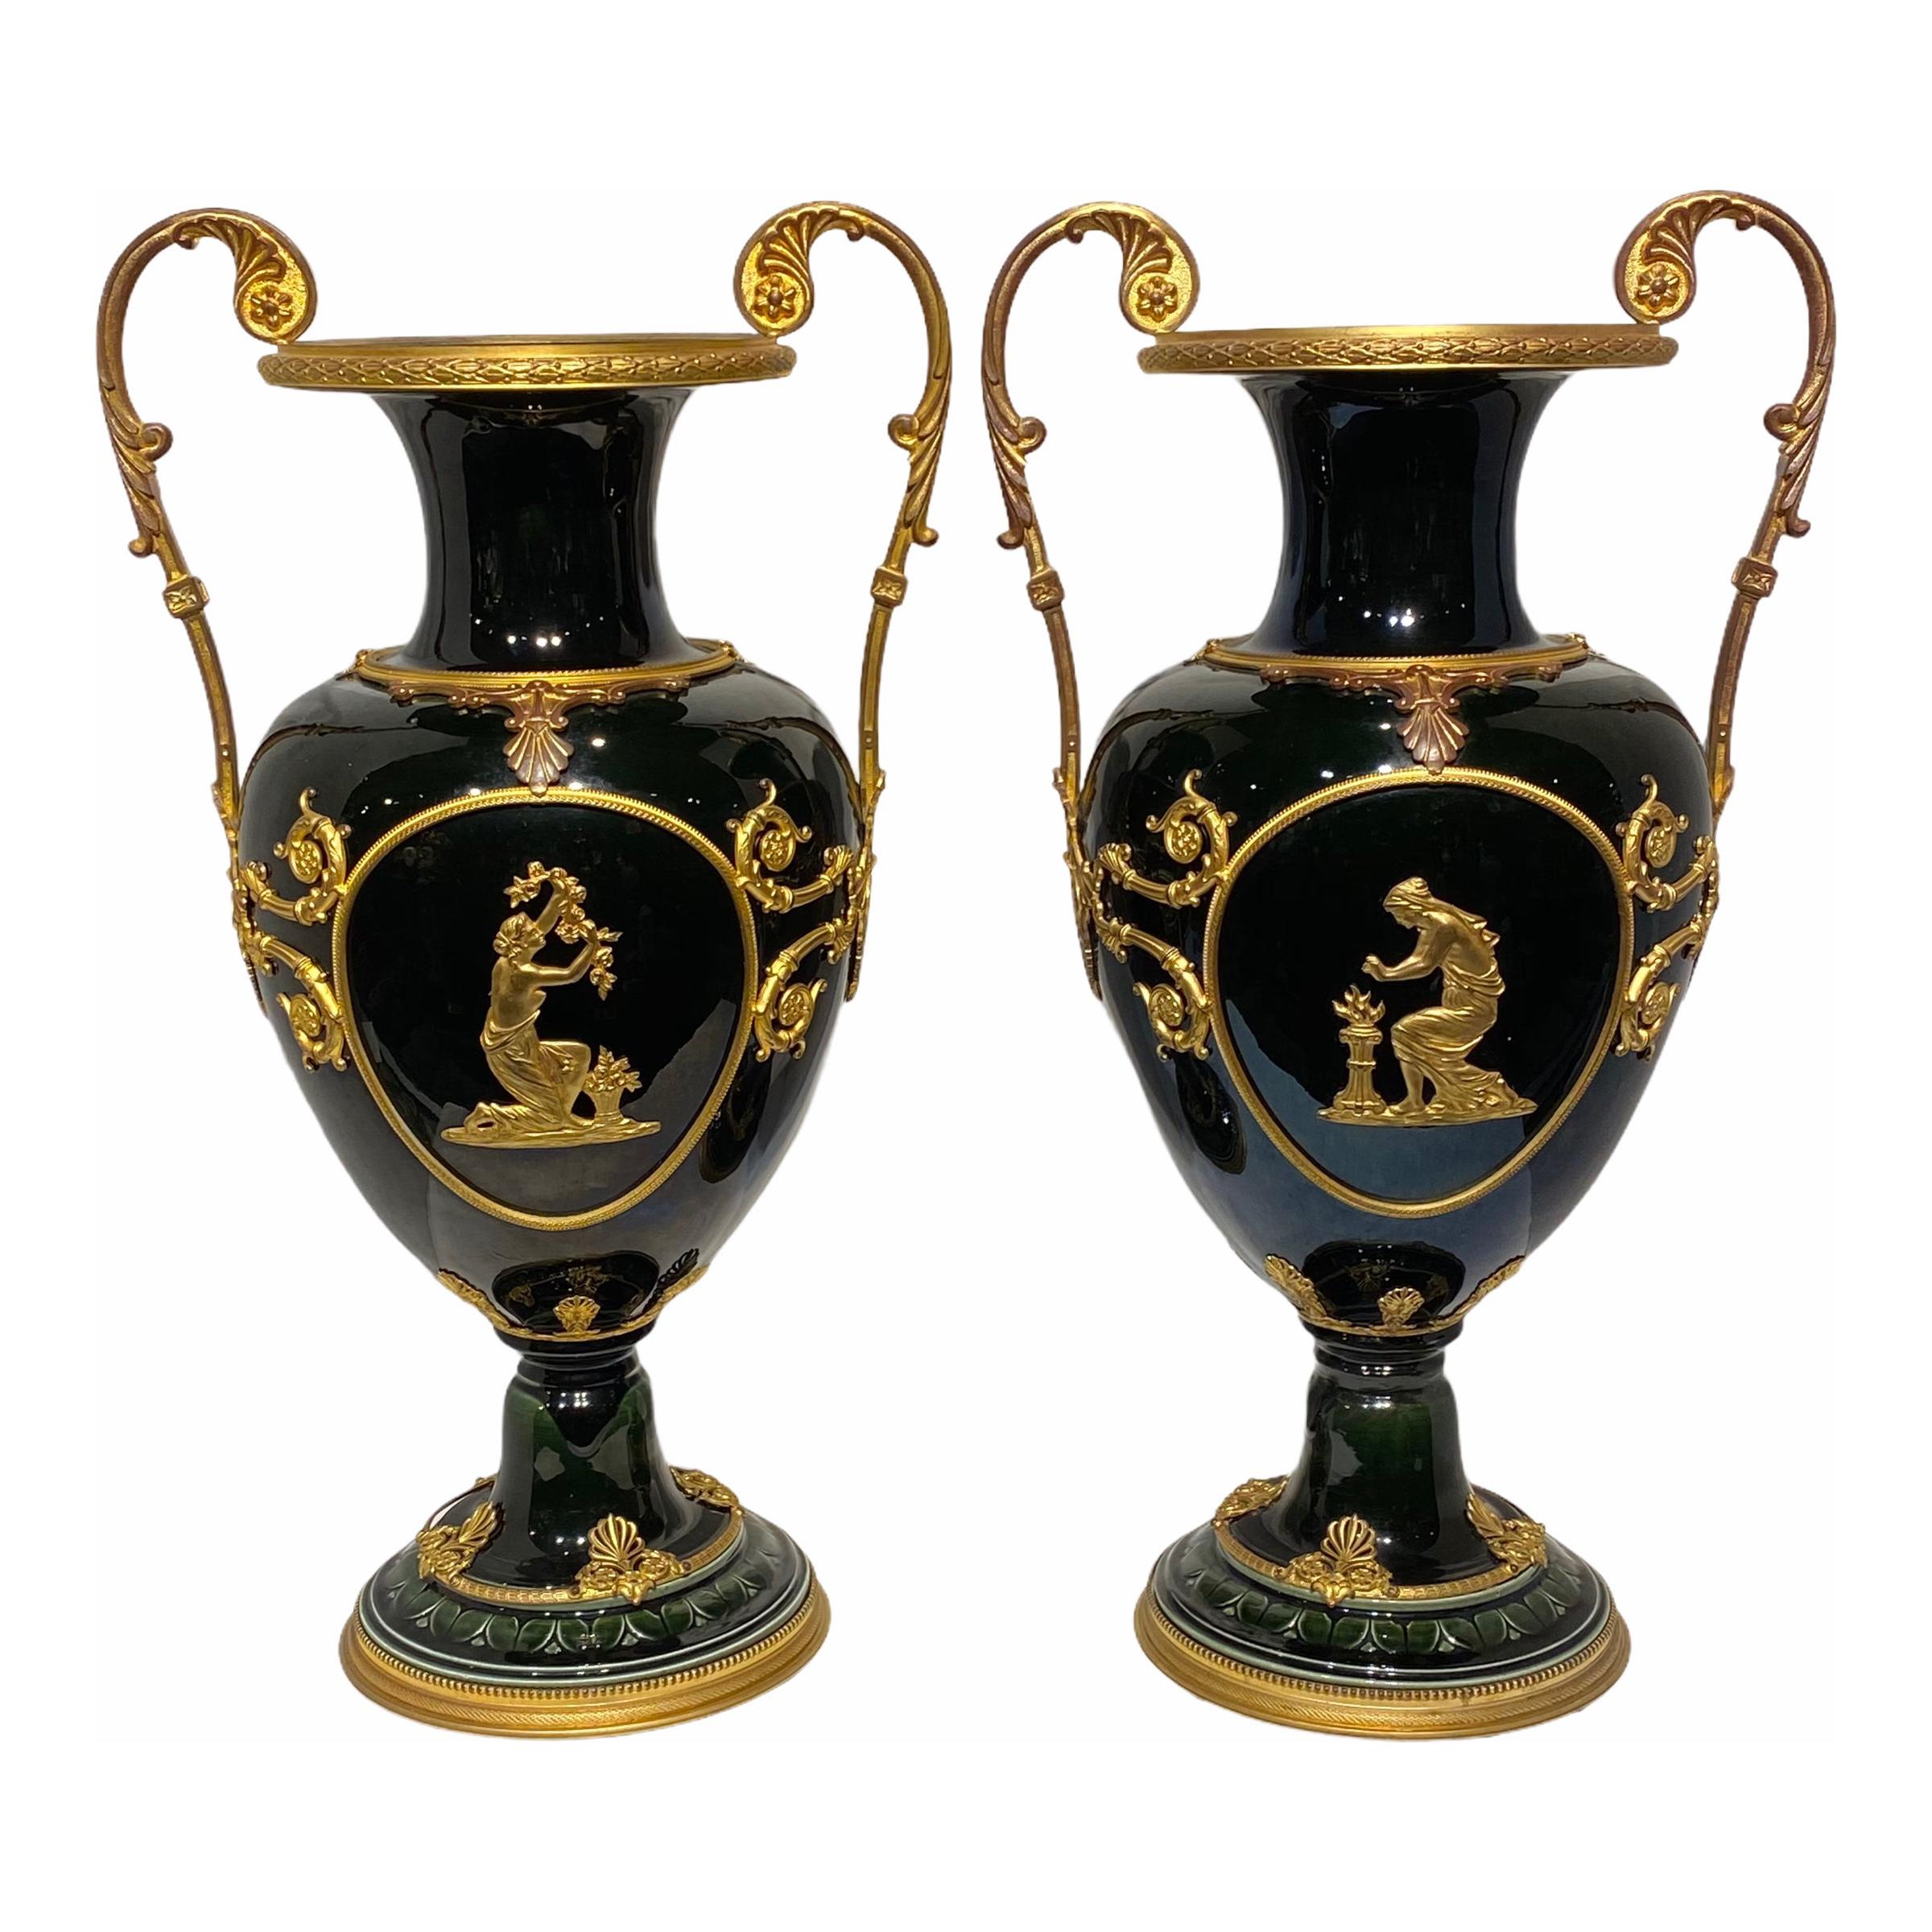 Schillernde glasierte Fayence-Vasen mit neoklassizistischen Beschlägen aus vergoldeter Bronze